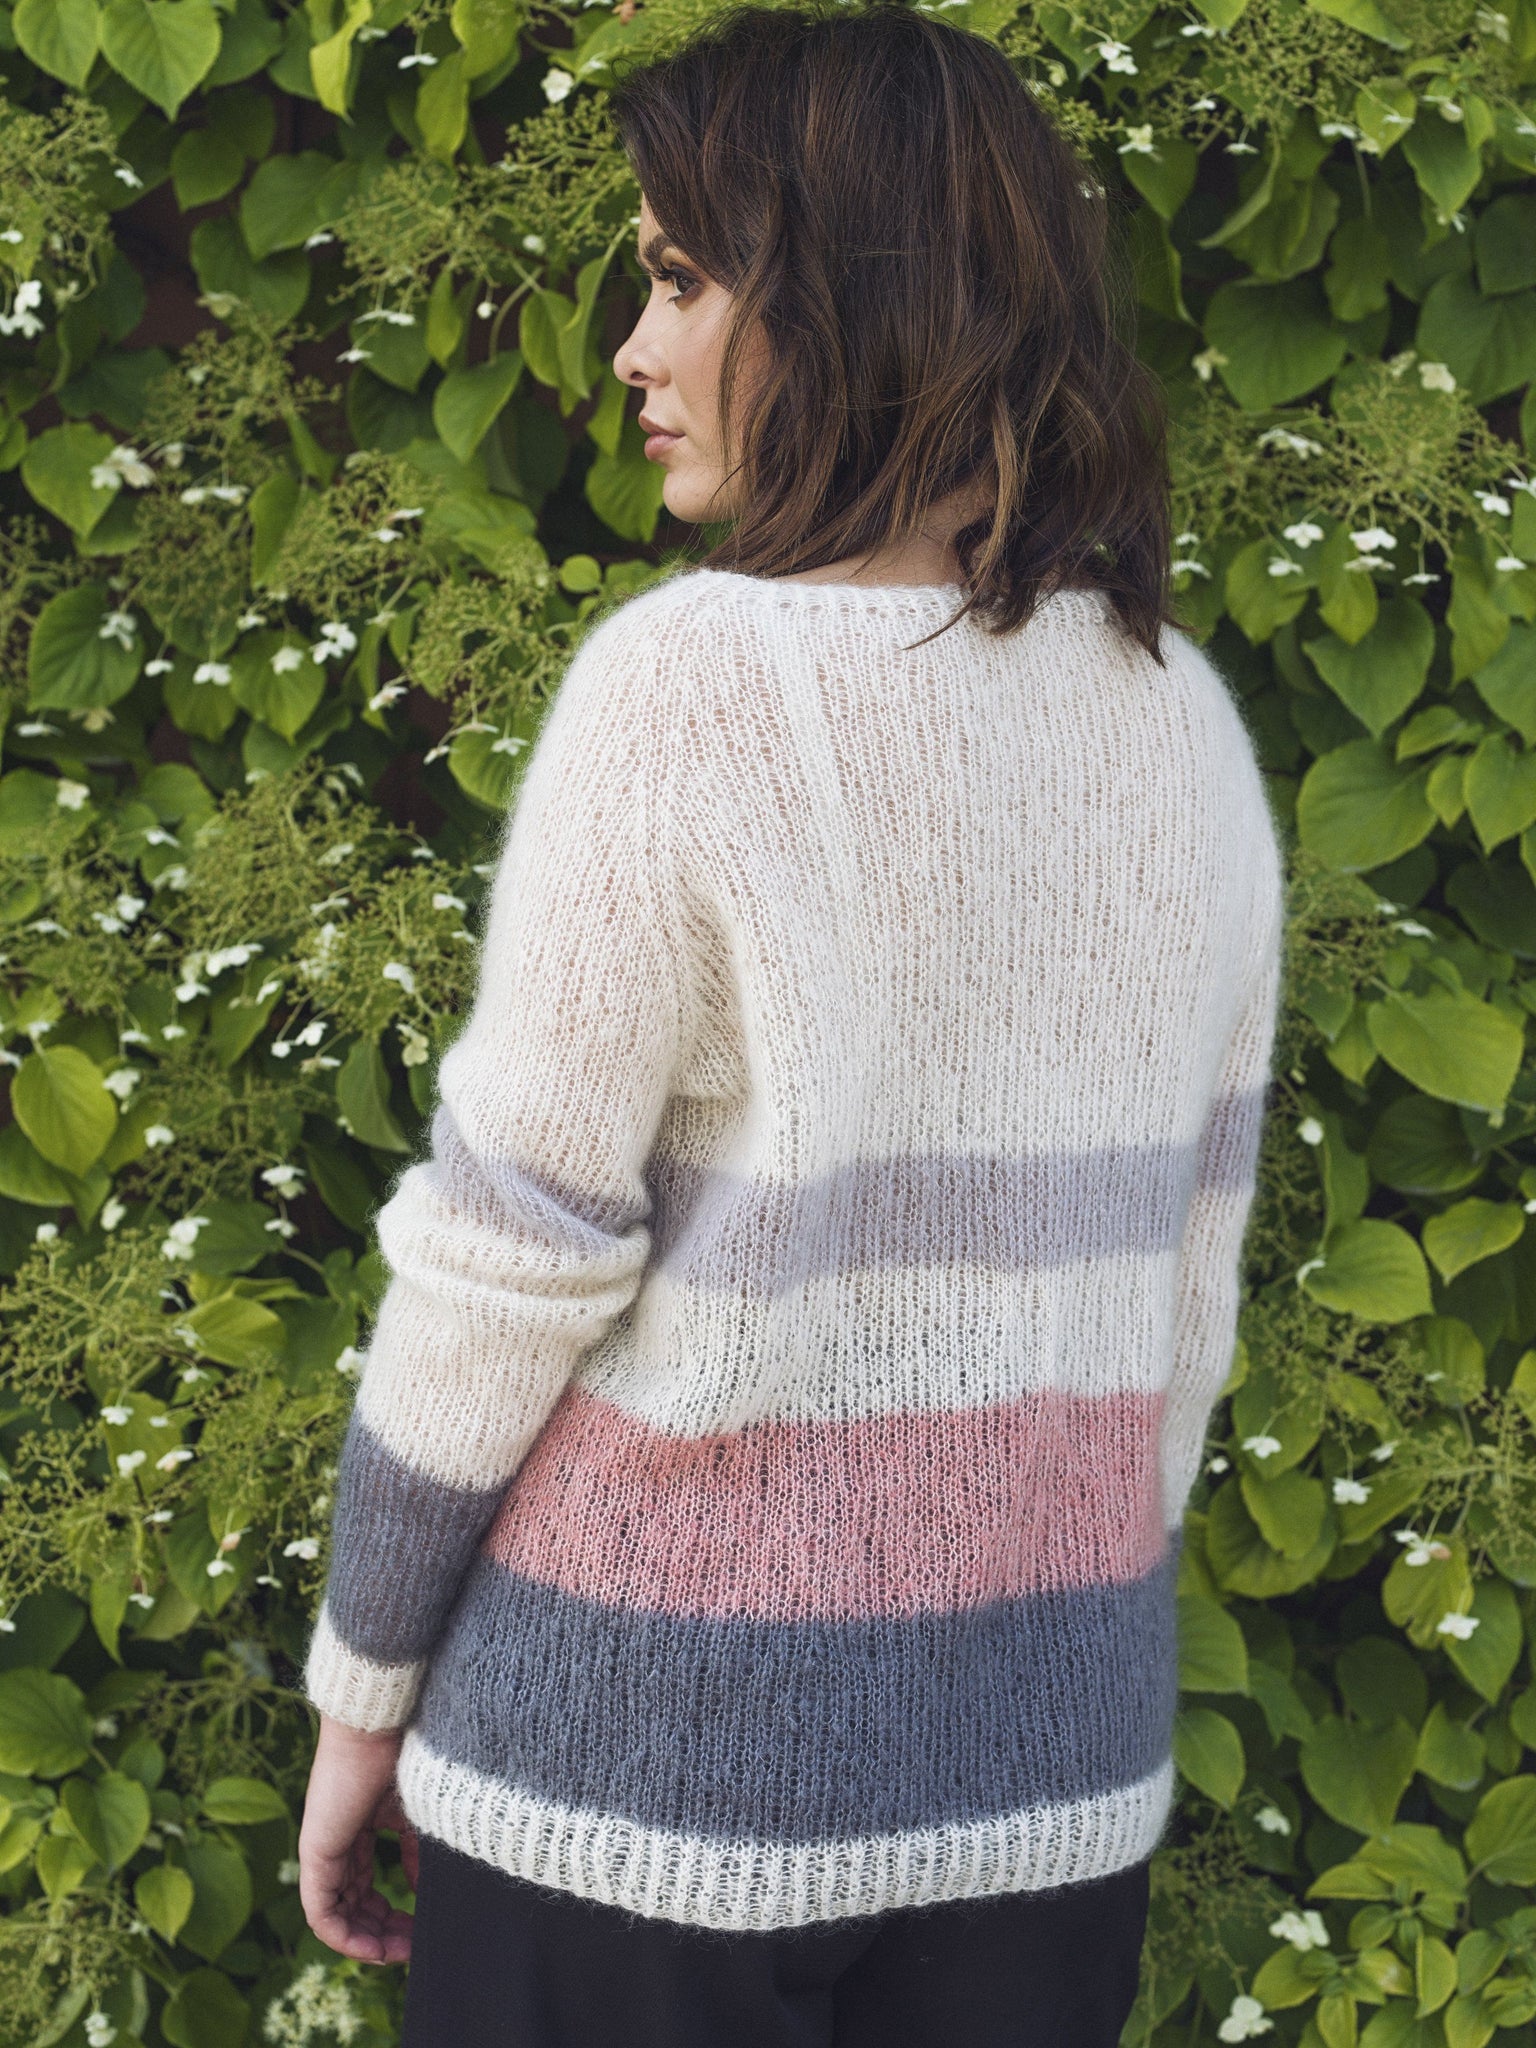 Maritsweater / english sweater GS english patterns 